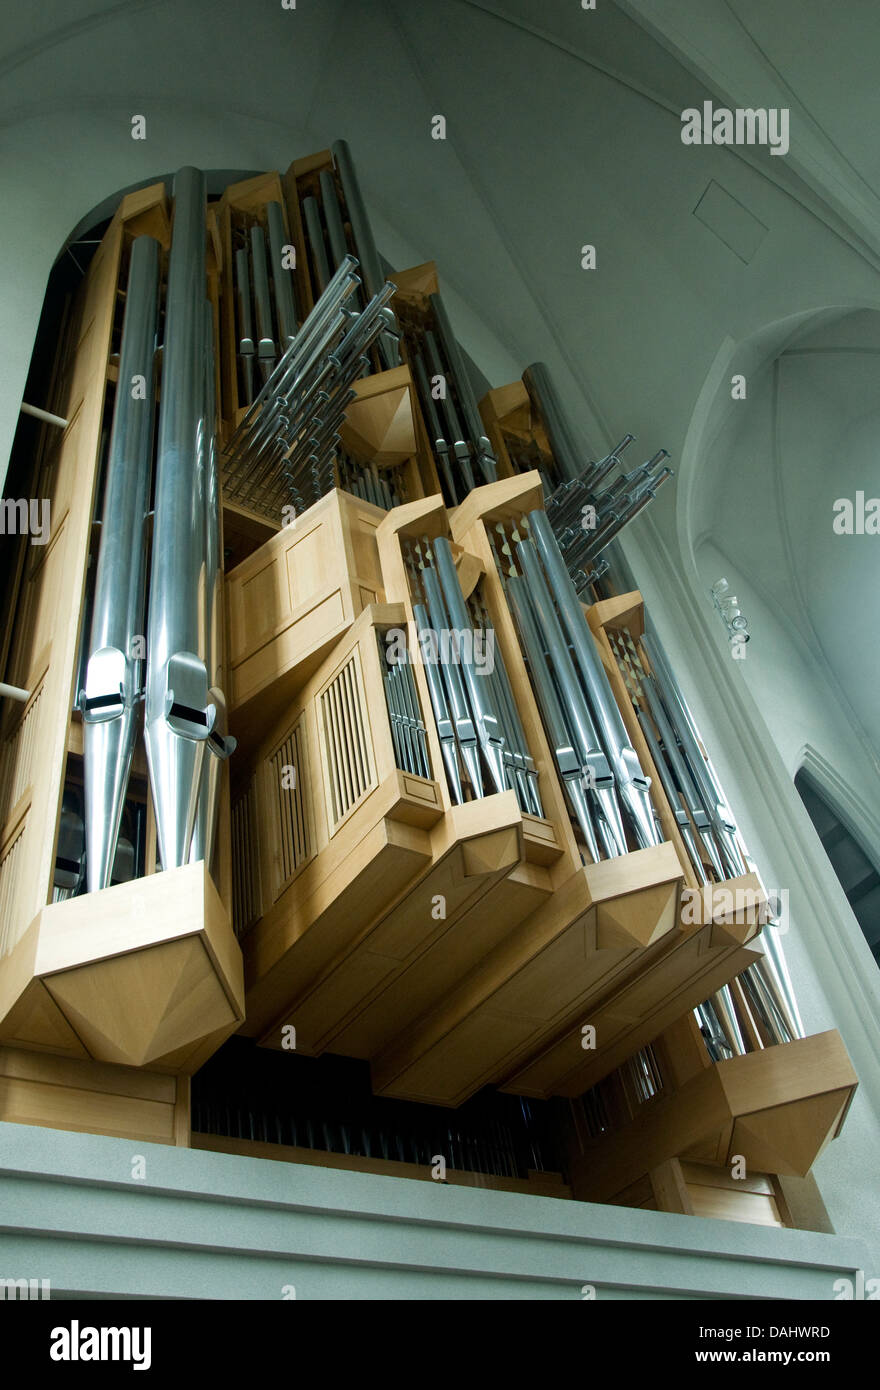 Regularmente se celebran conciertos de órgano en Reykjavik la impresionante iglesia Hallsgrimkirkja, el instrumento moderno, el más grande de Islandia Foto de stock